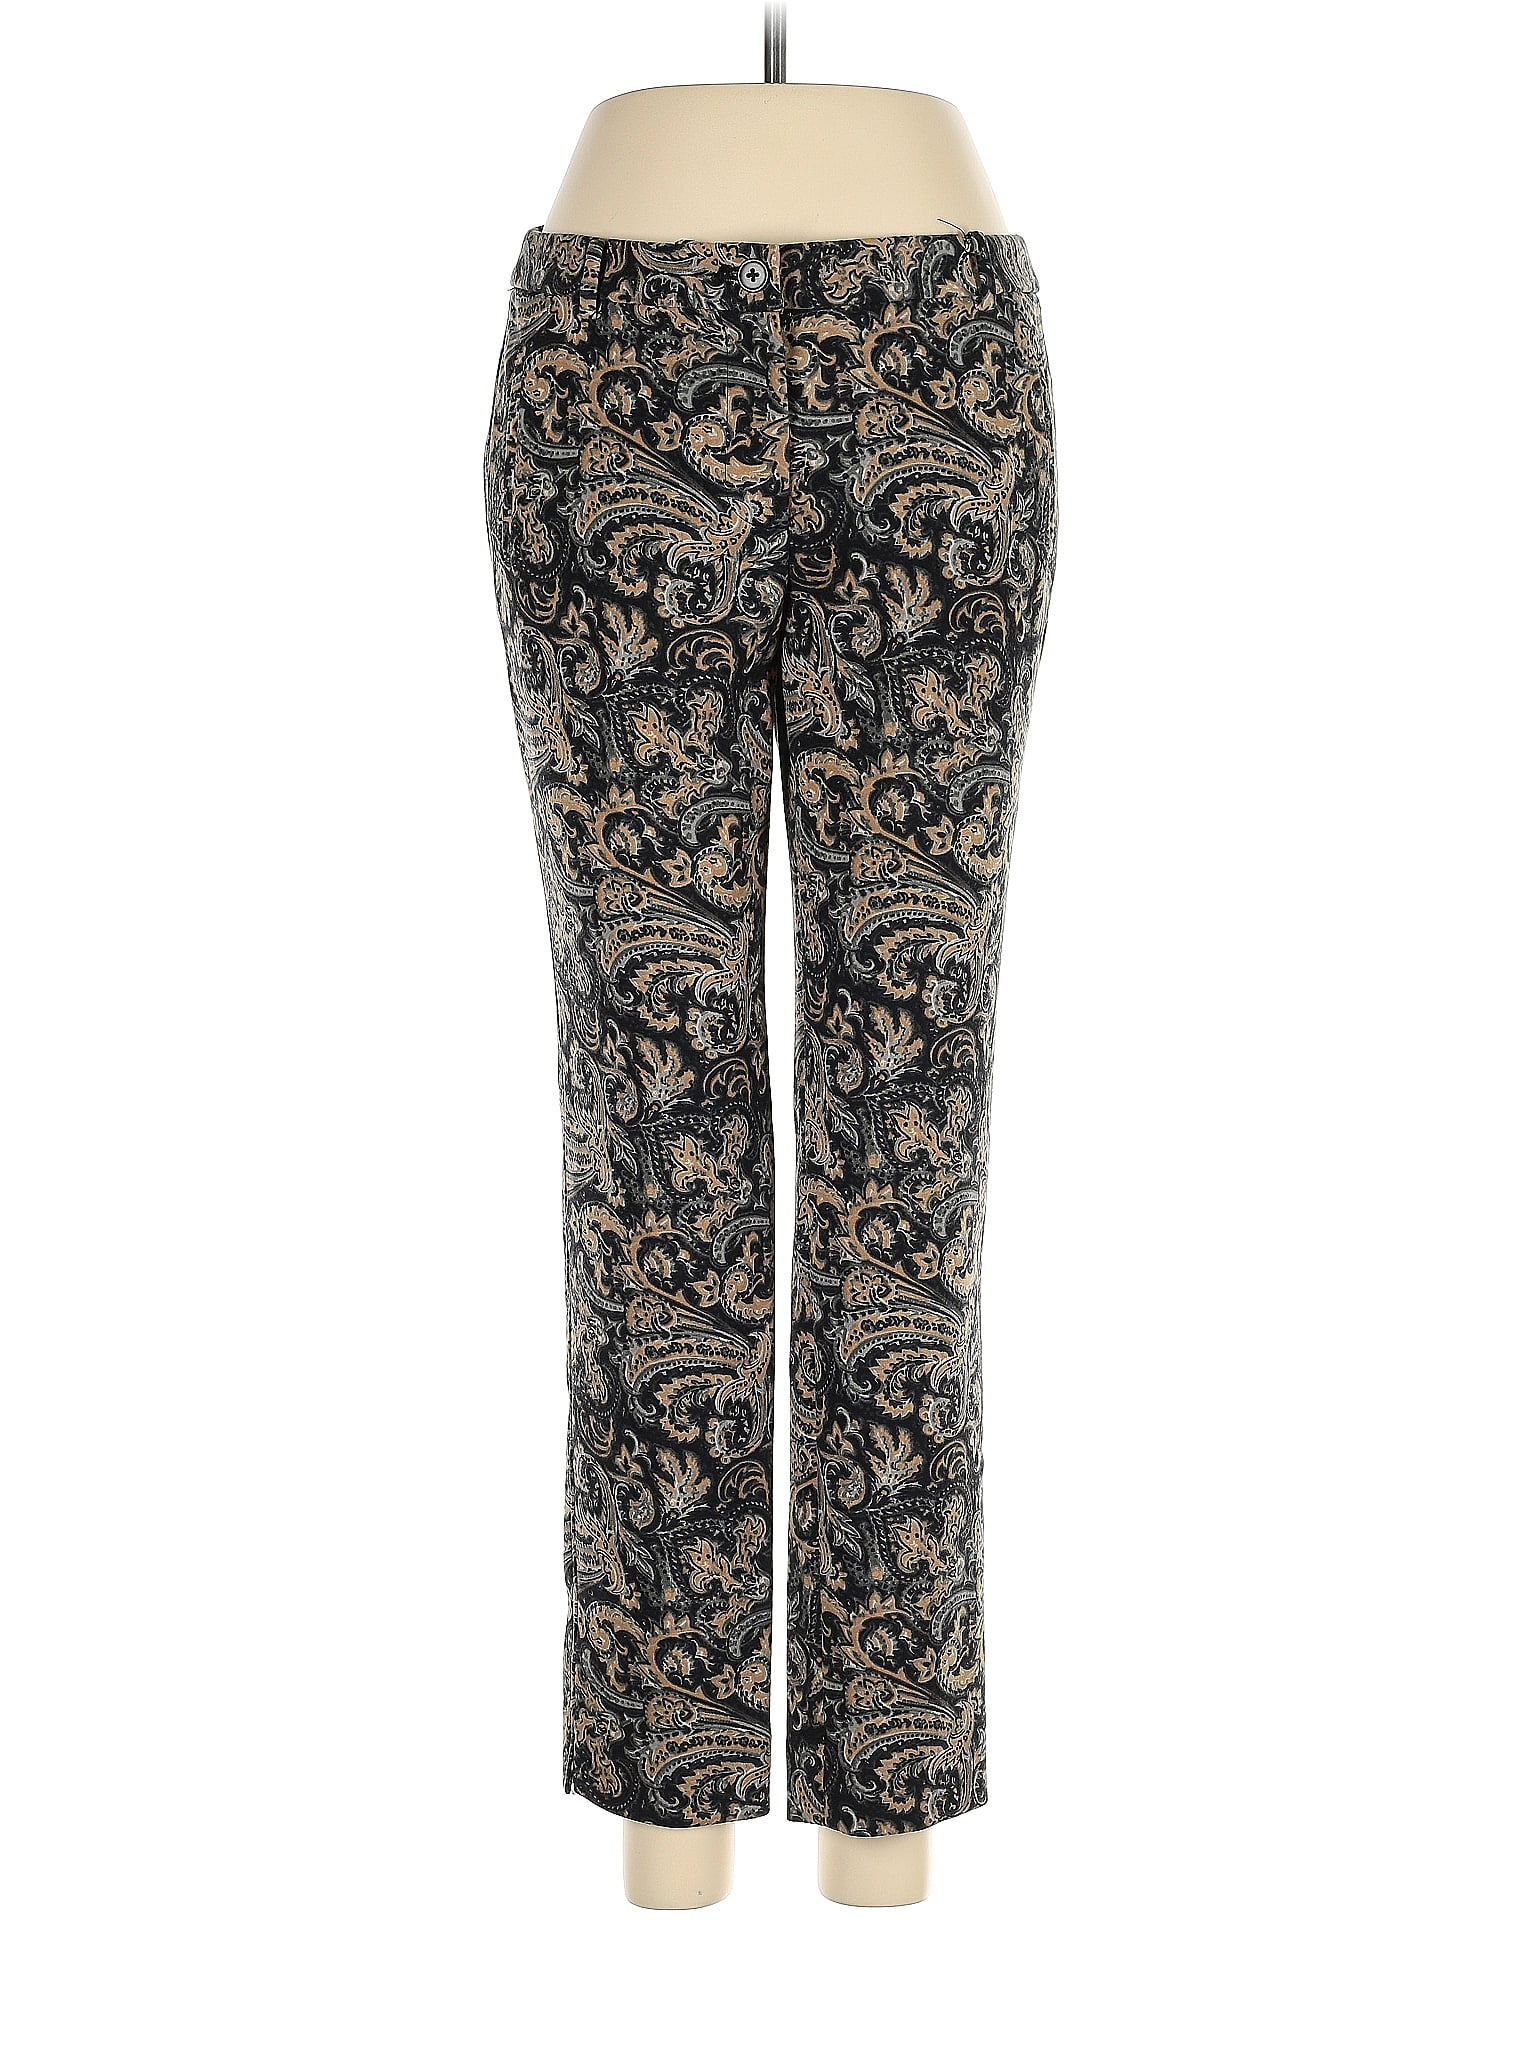 Soft Surroundings Leopard Print Blue Casual Pants Size XL (Petite) - 65%  off